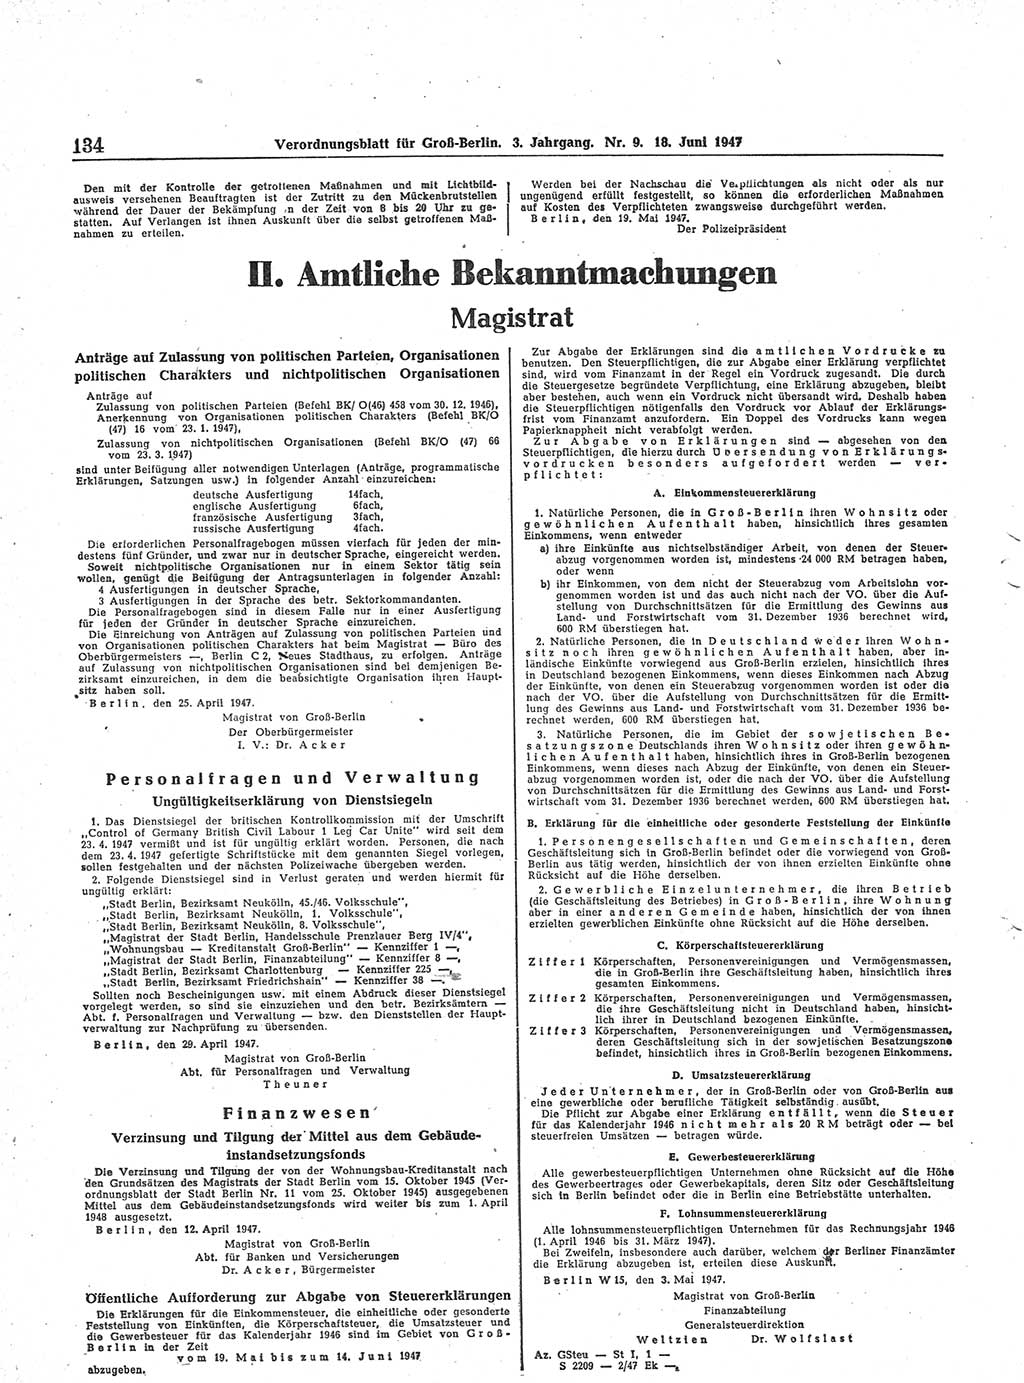 Verordnungsblatt (VOBl.) für Groß-Berlin 1947, Seite 134 (VOBl. Bln. 1947, S. 134)